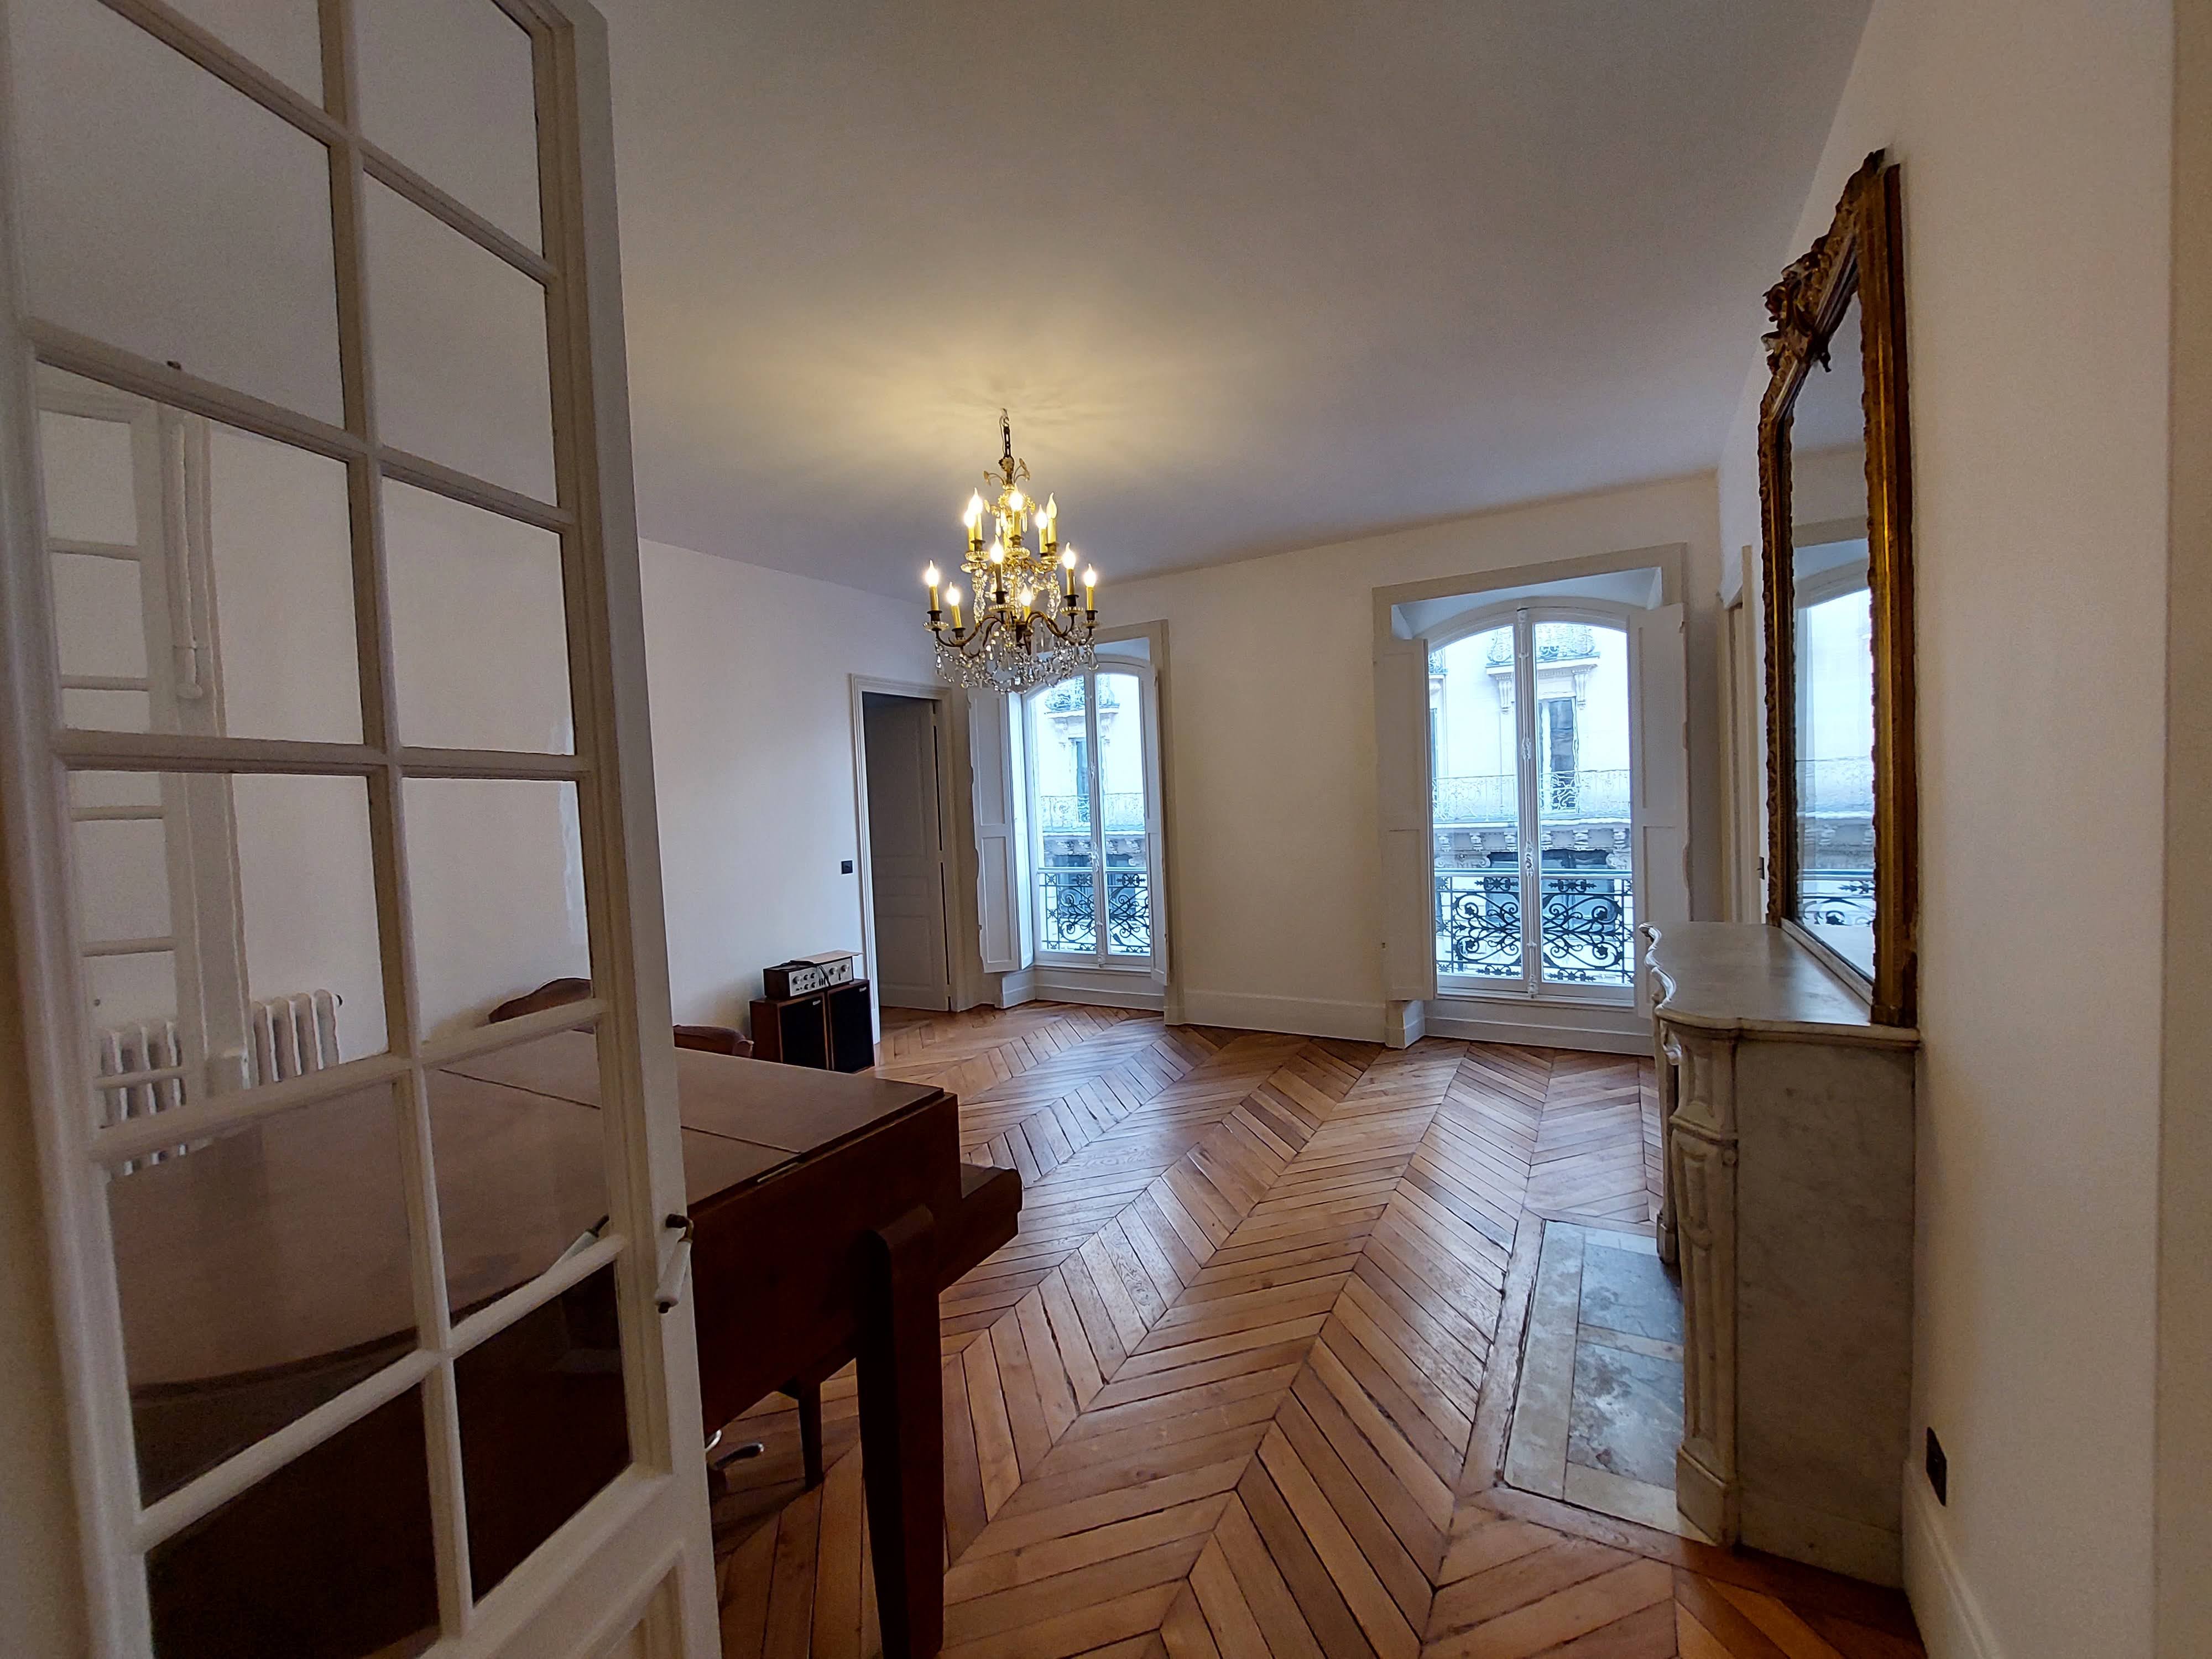 Image Sale apartment 10 rooms 221 m² Paris 6E (75006) 3.990.000 € 6